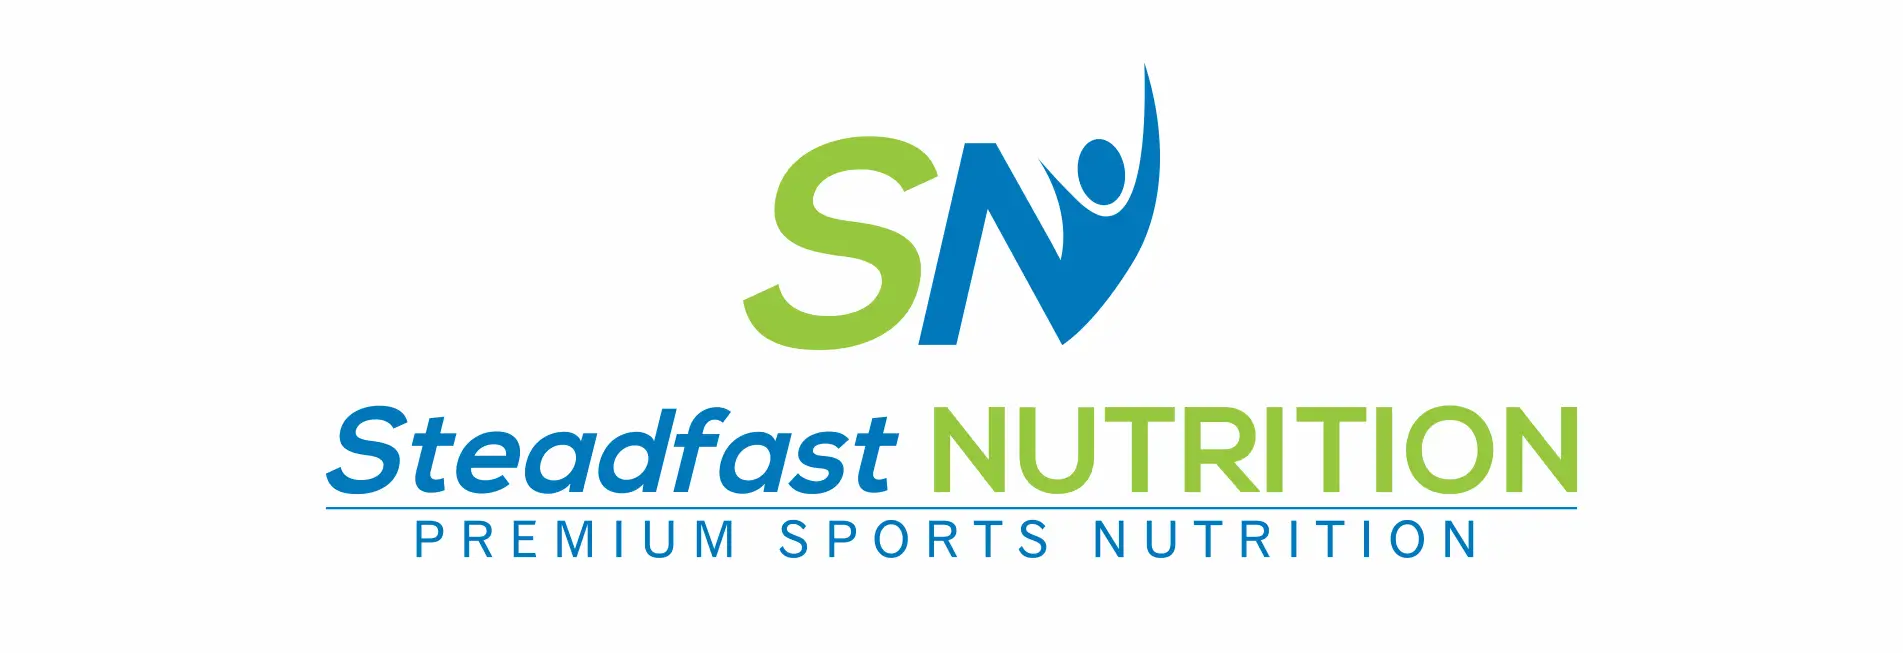 Steadfast Nutrition logo